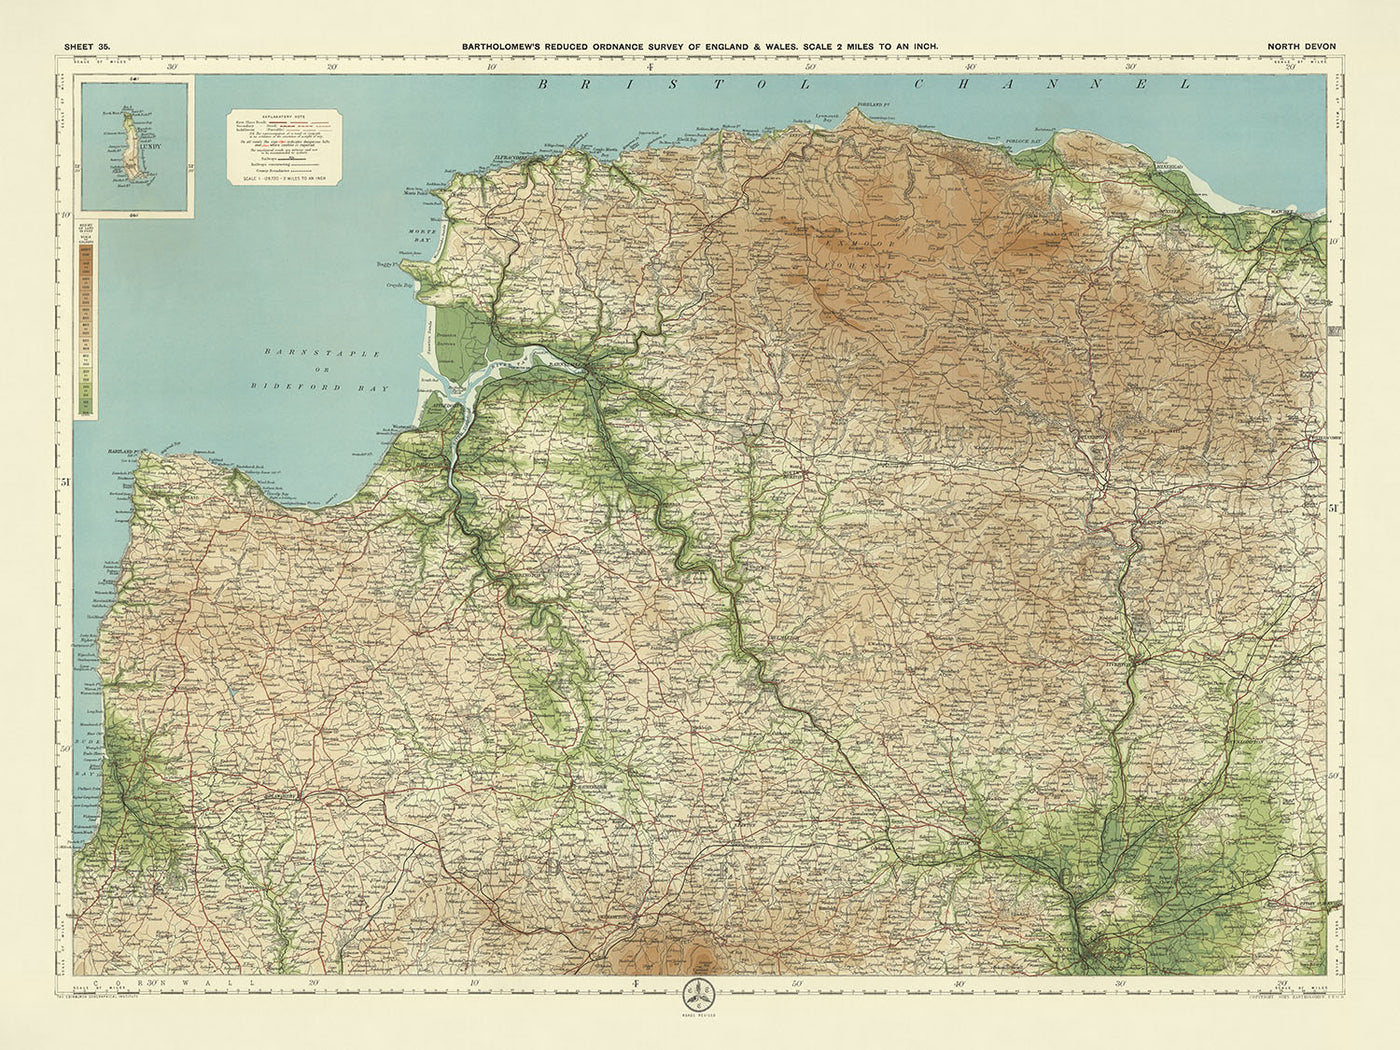 Old OS Map of North Devon by Bartholomew, 1901: Barnstaple, Exmoor, River Taw, Bideford Bay, Lundy Island